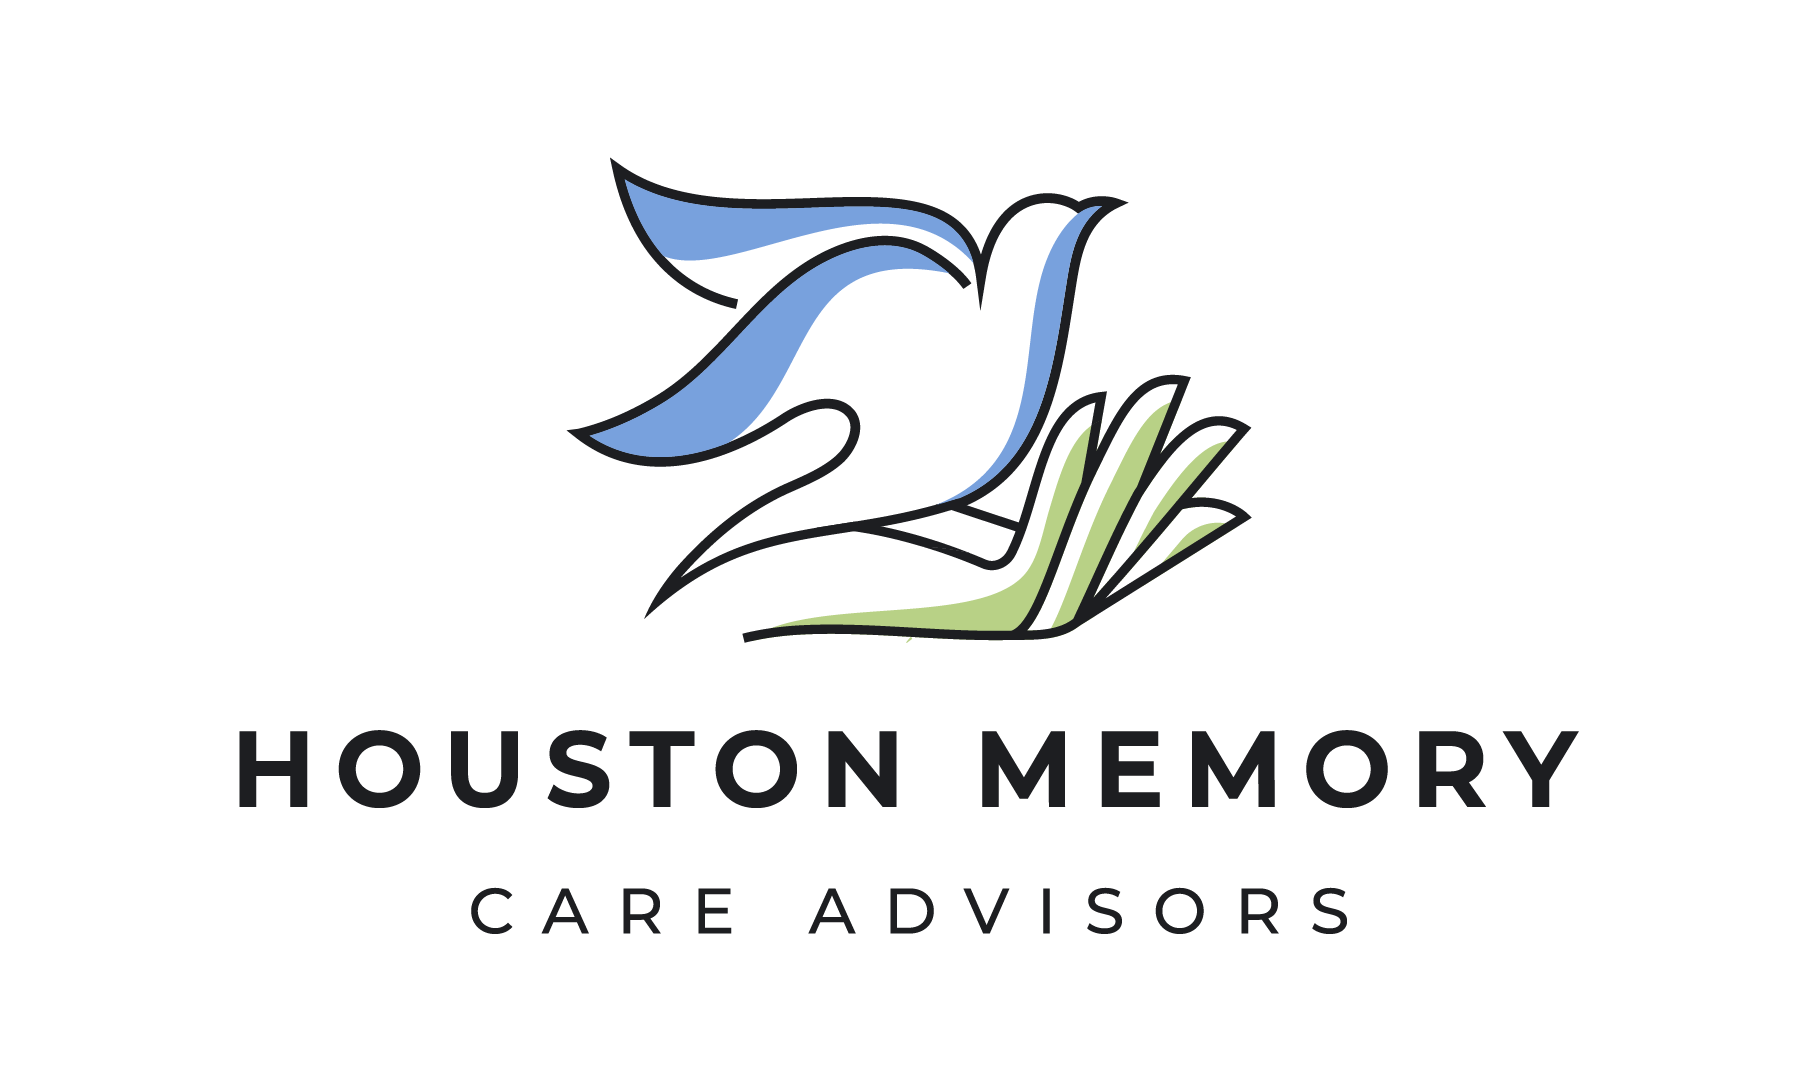 Houston Memory Care Advisors